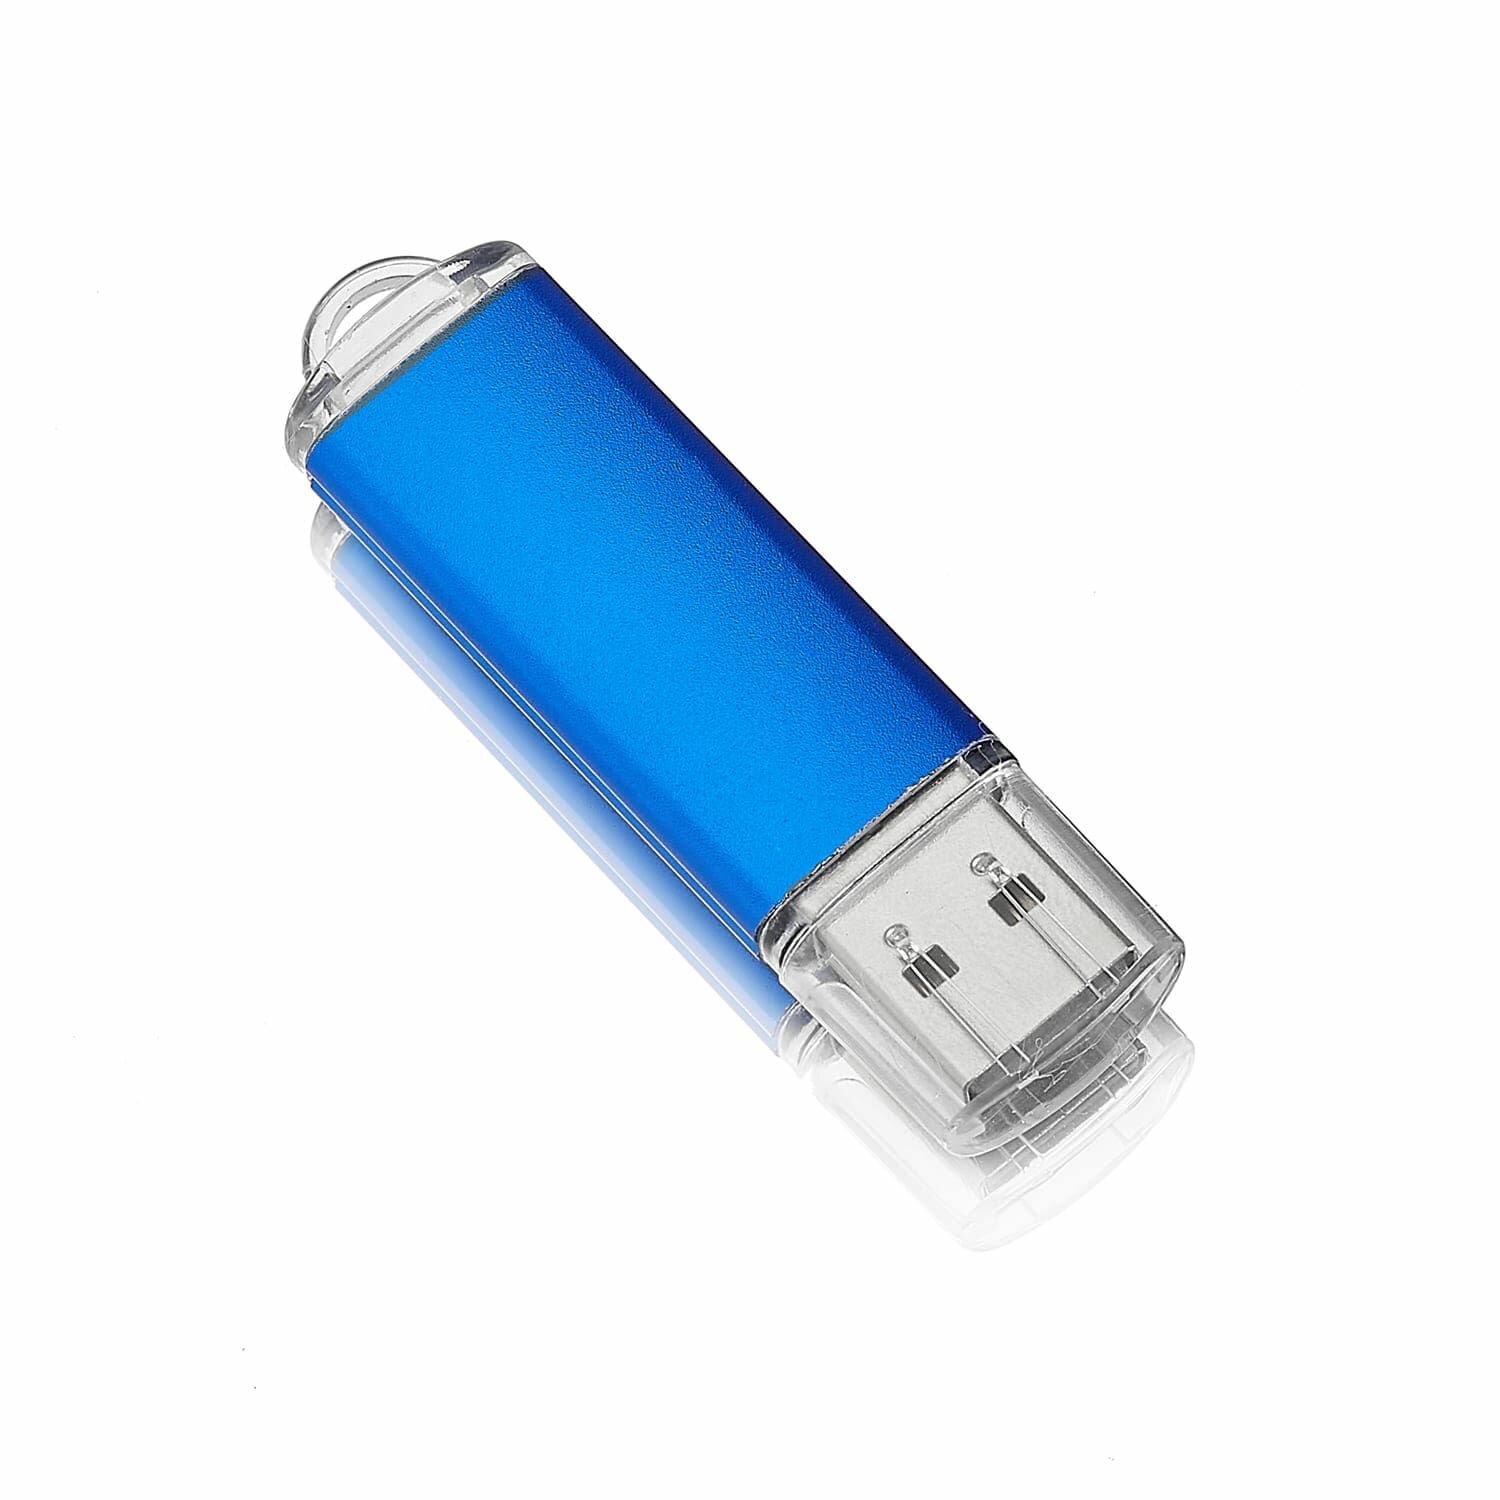 Флешка Simple, 128 МB, синяя, USB 2.0, арт. F23